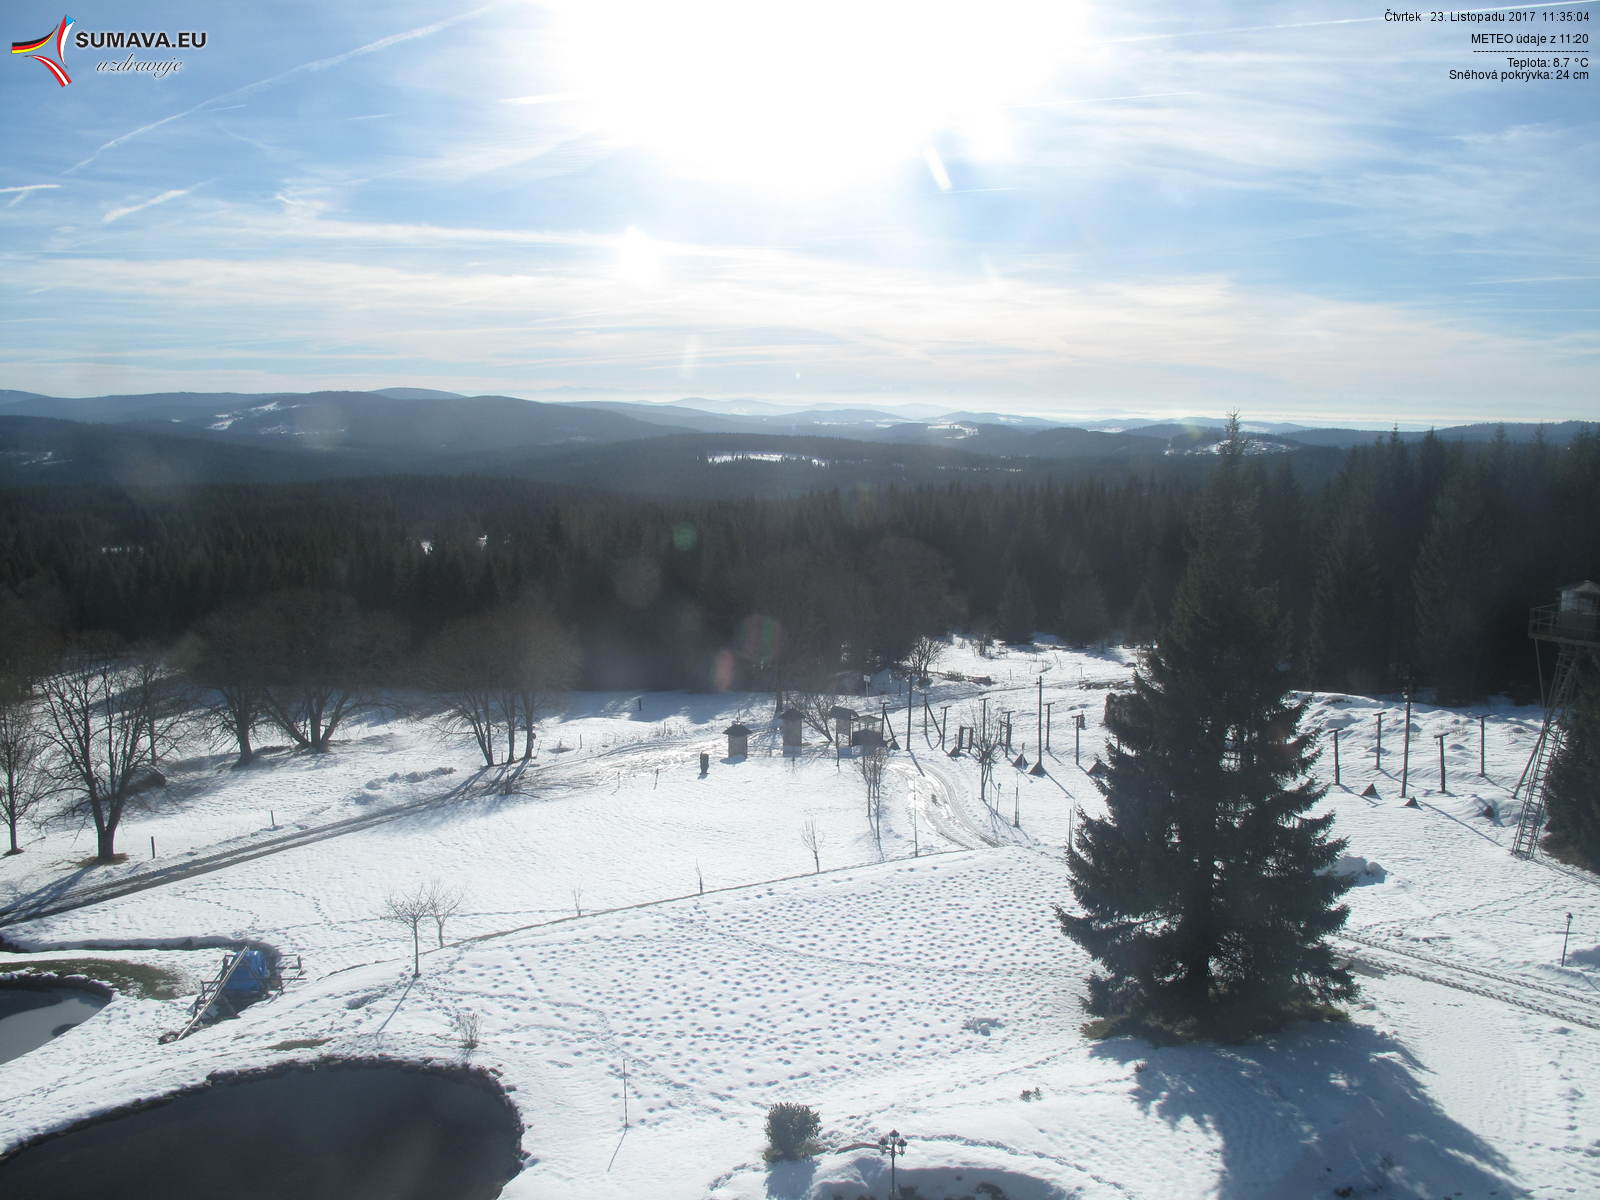 Sníh na konci listopadu při pohledu z webkamery Bučina